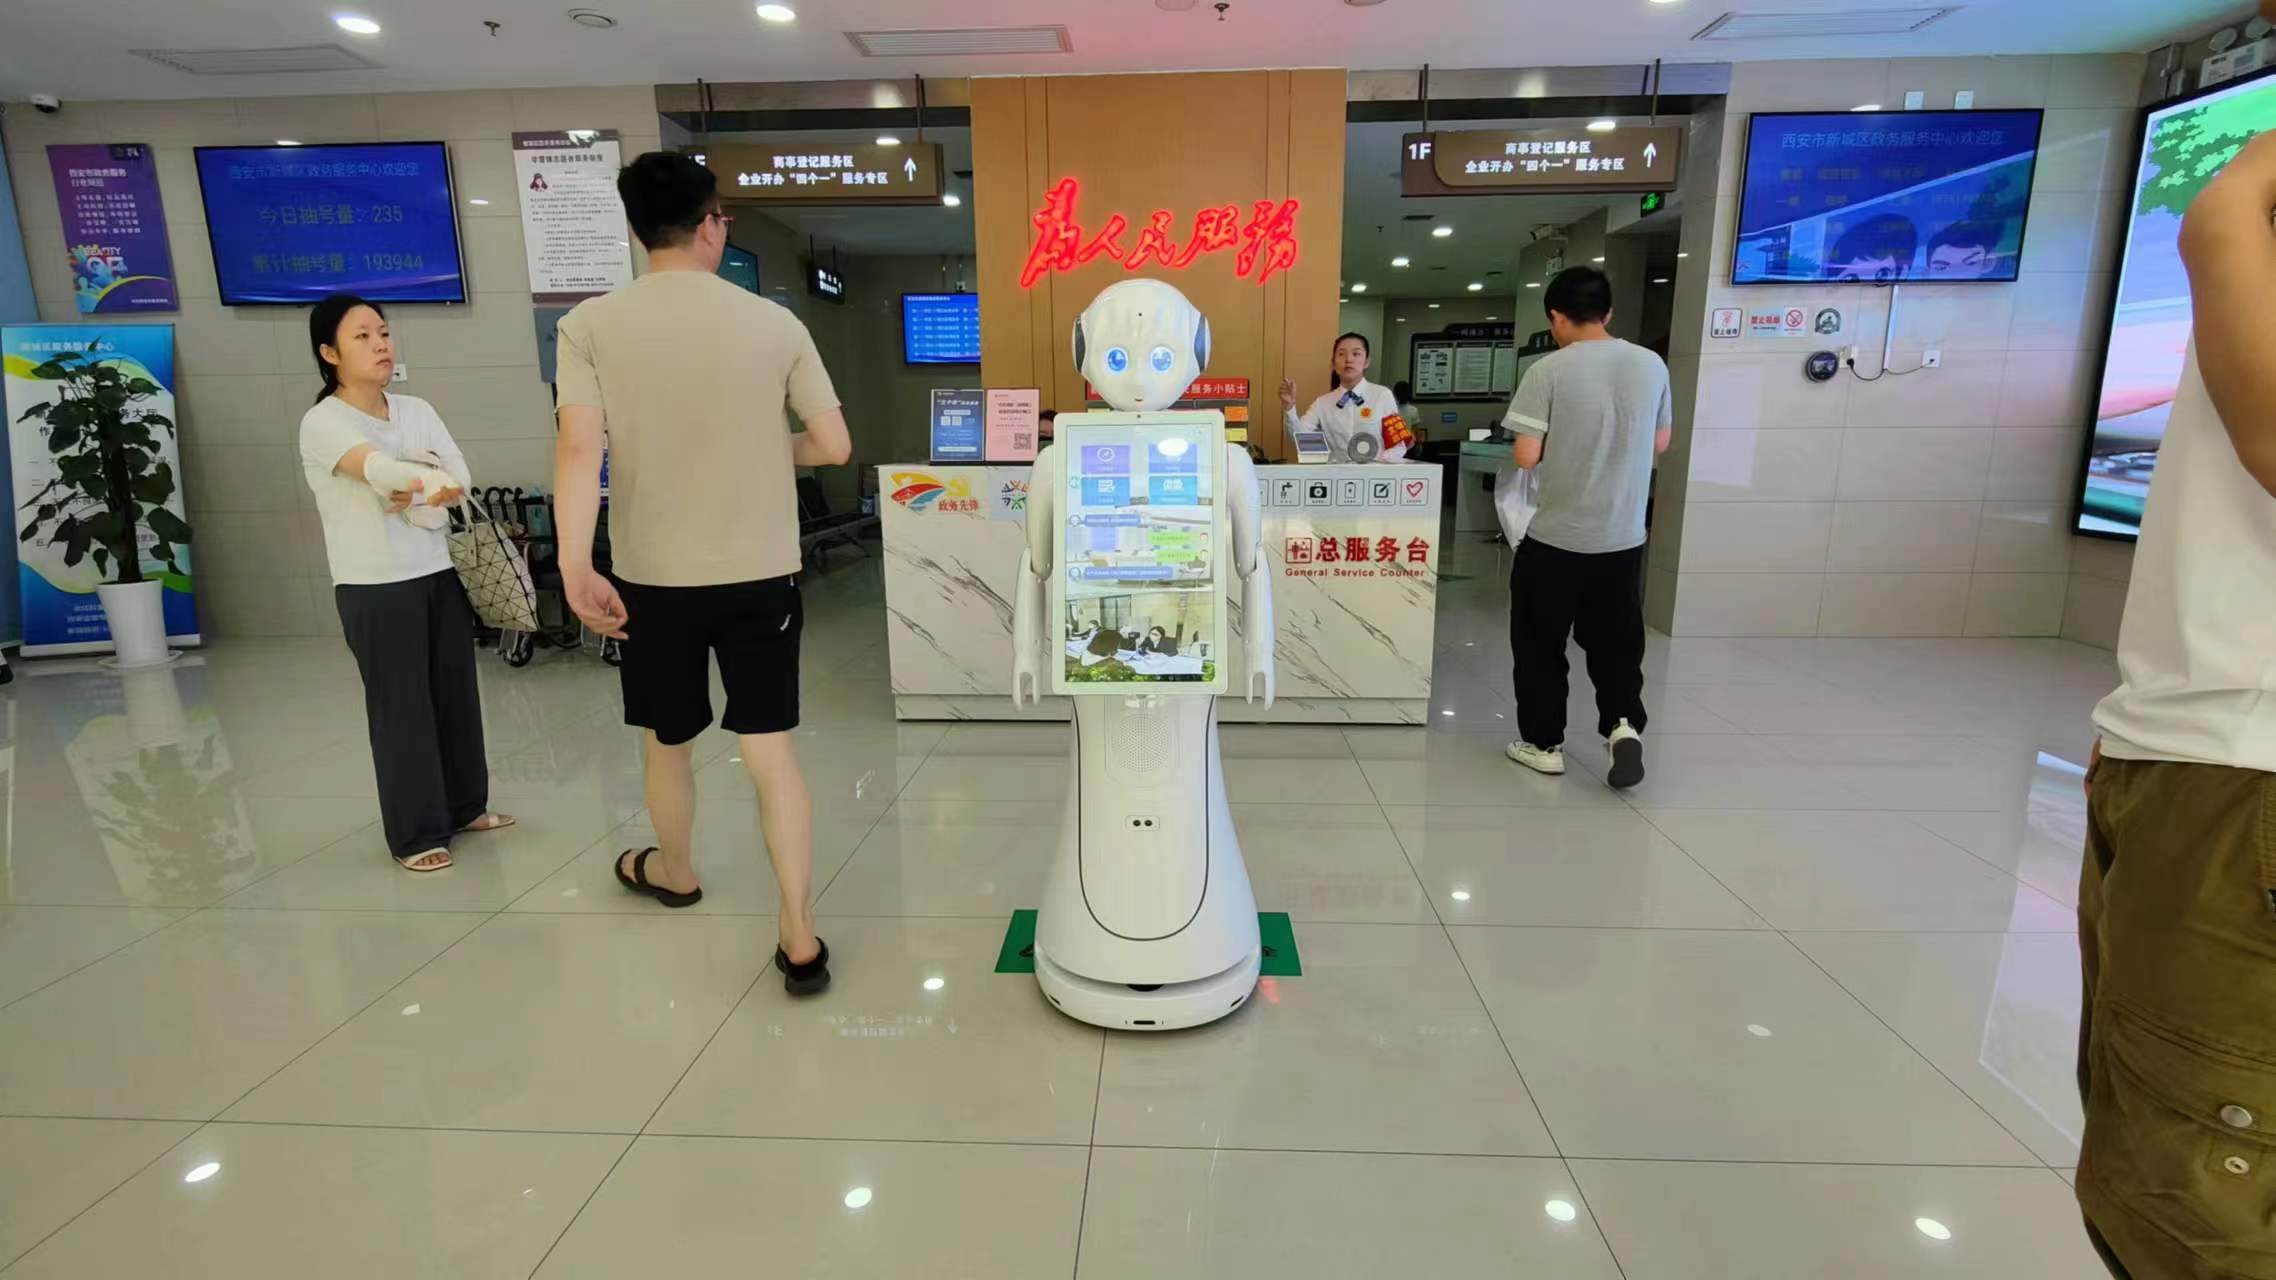 Пример применения сервисного робота Alice-AI в «Центре по делам правительства Нового района Сианя»!